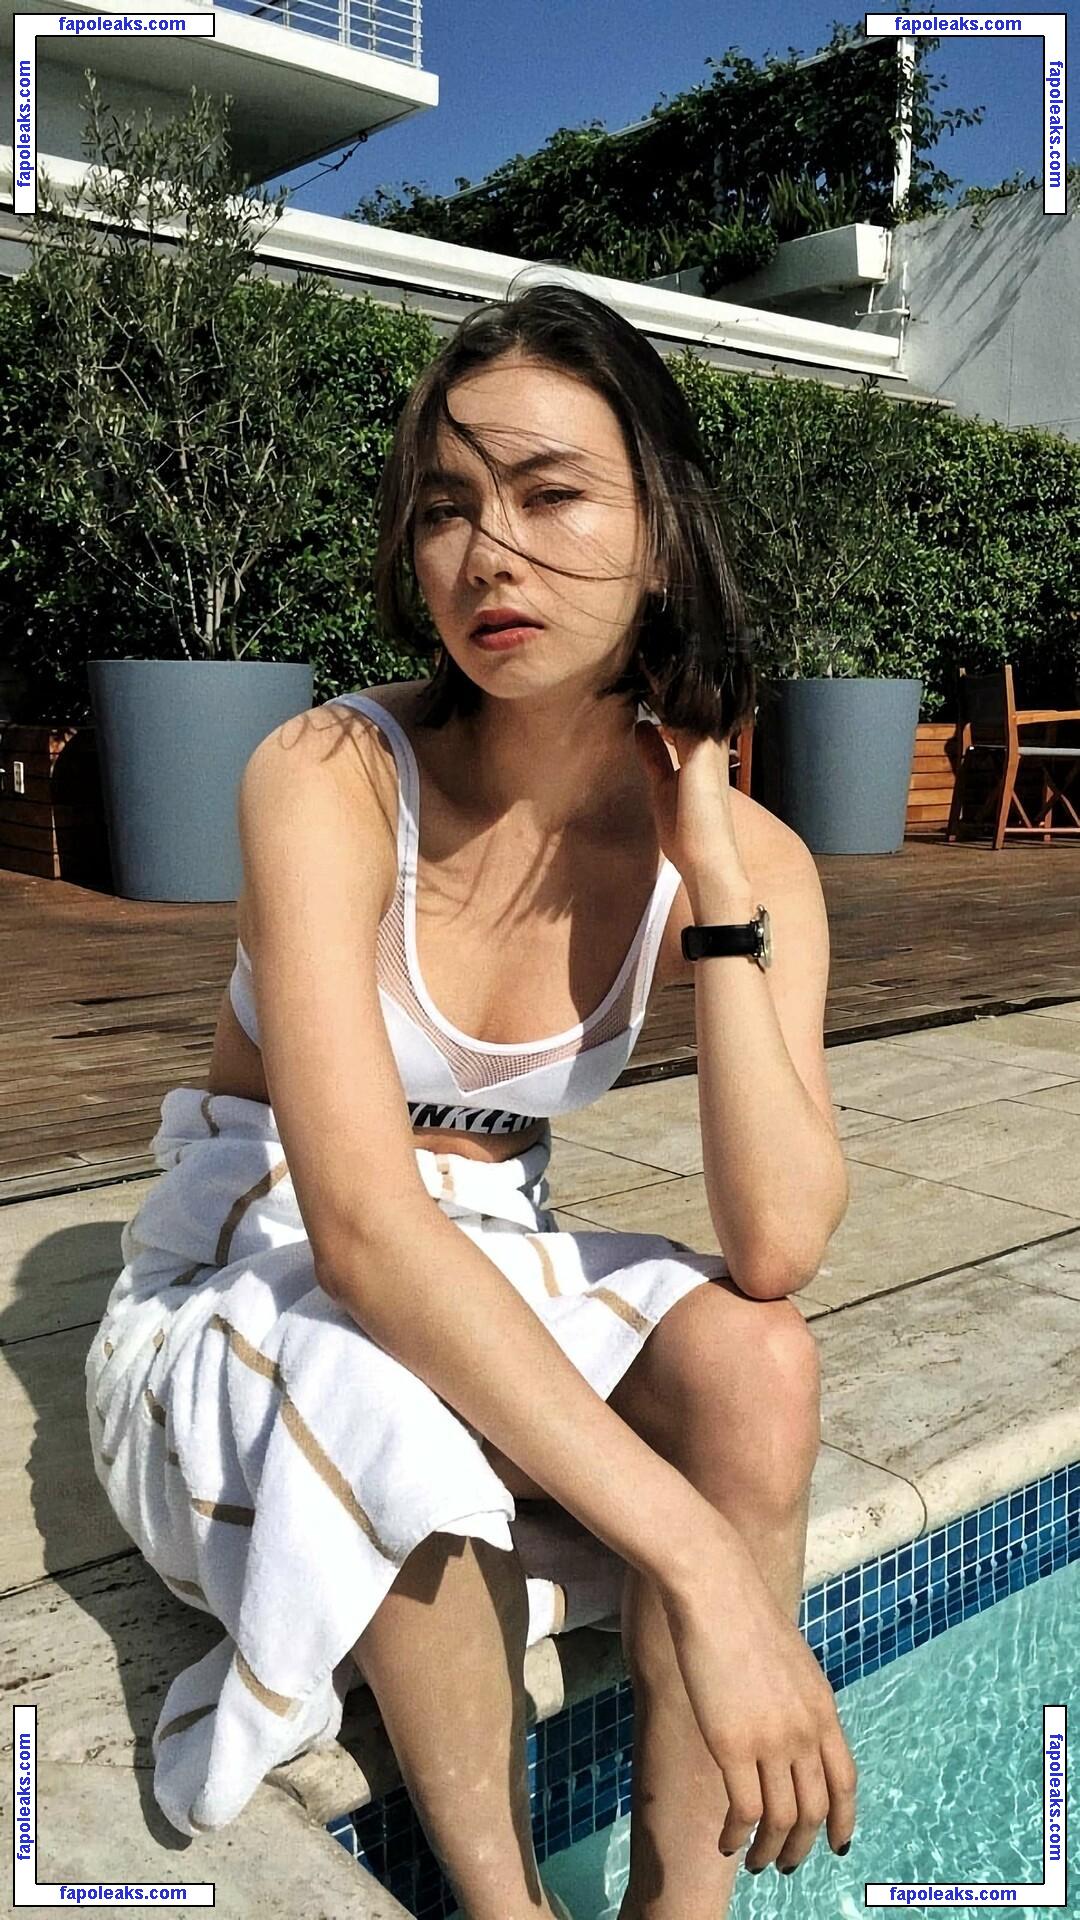 Lauren Tsai / laurentsai nude photo #0015 from OnlyFans